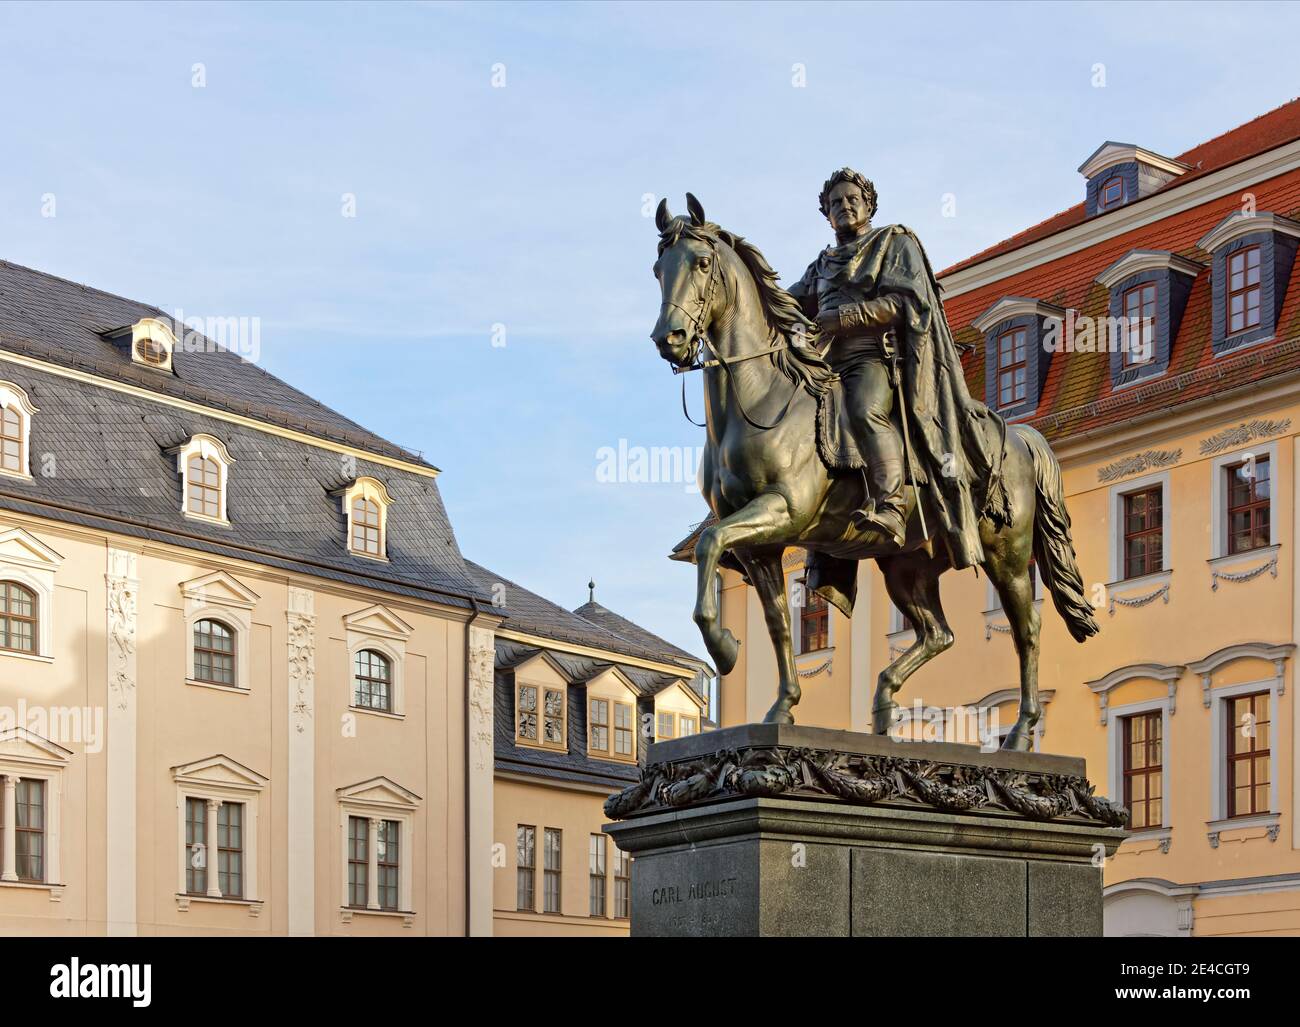 Germania, Turingia, Weimar, monumento, cavallo, rider, case, luce notturna Foto Stock